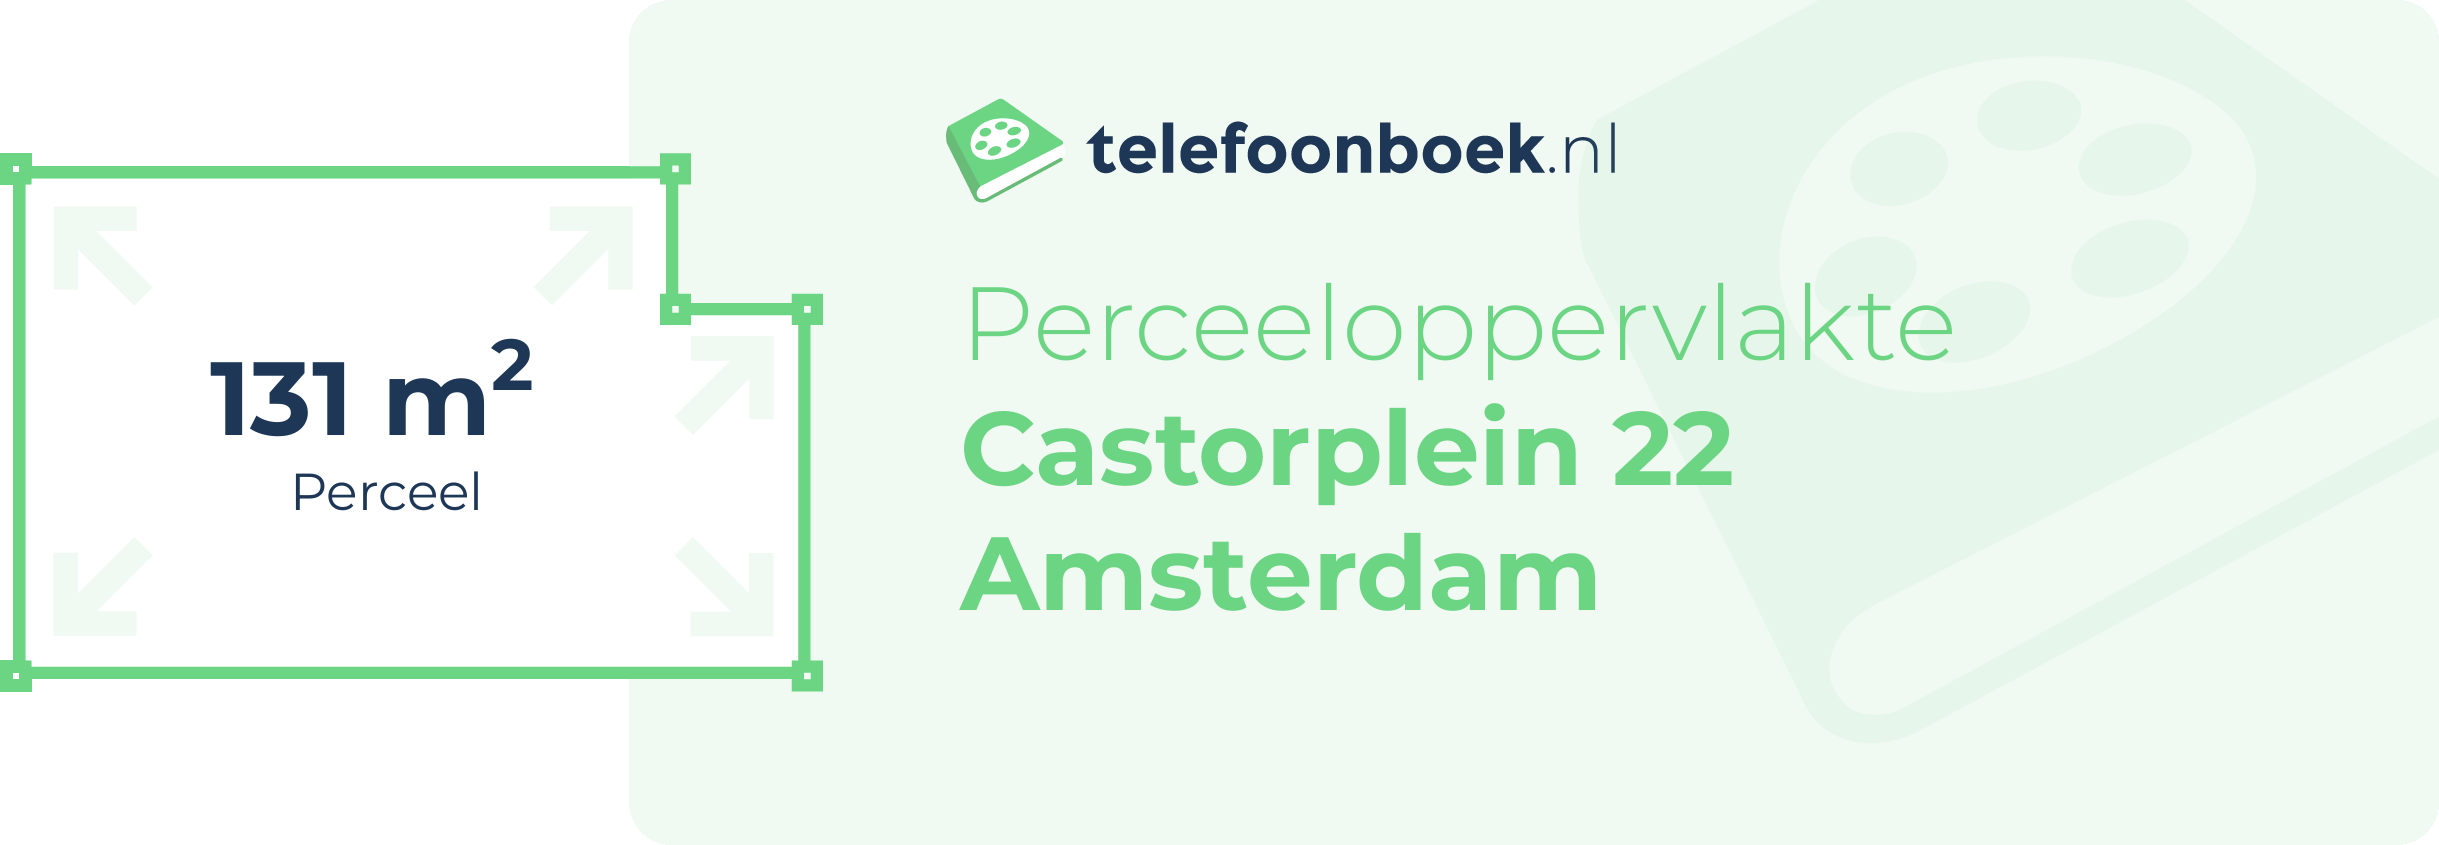 Perceeloppervlakte Castorplein 22 Amsterdam